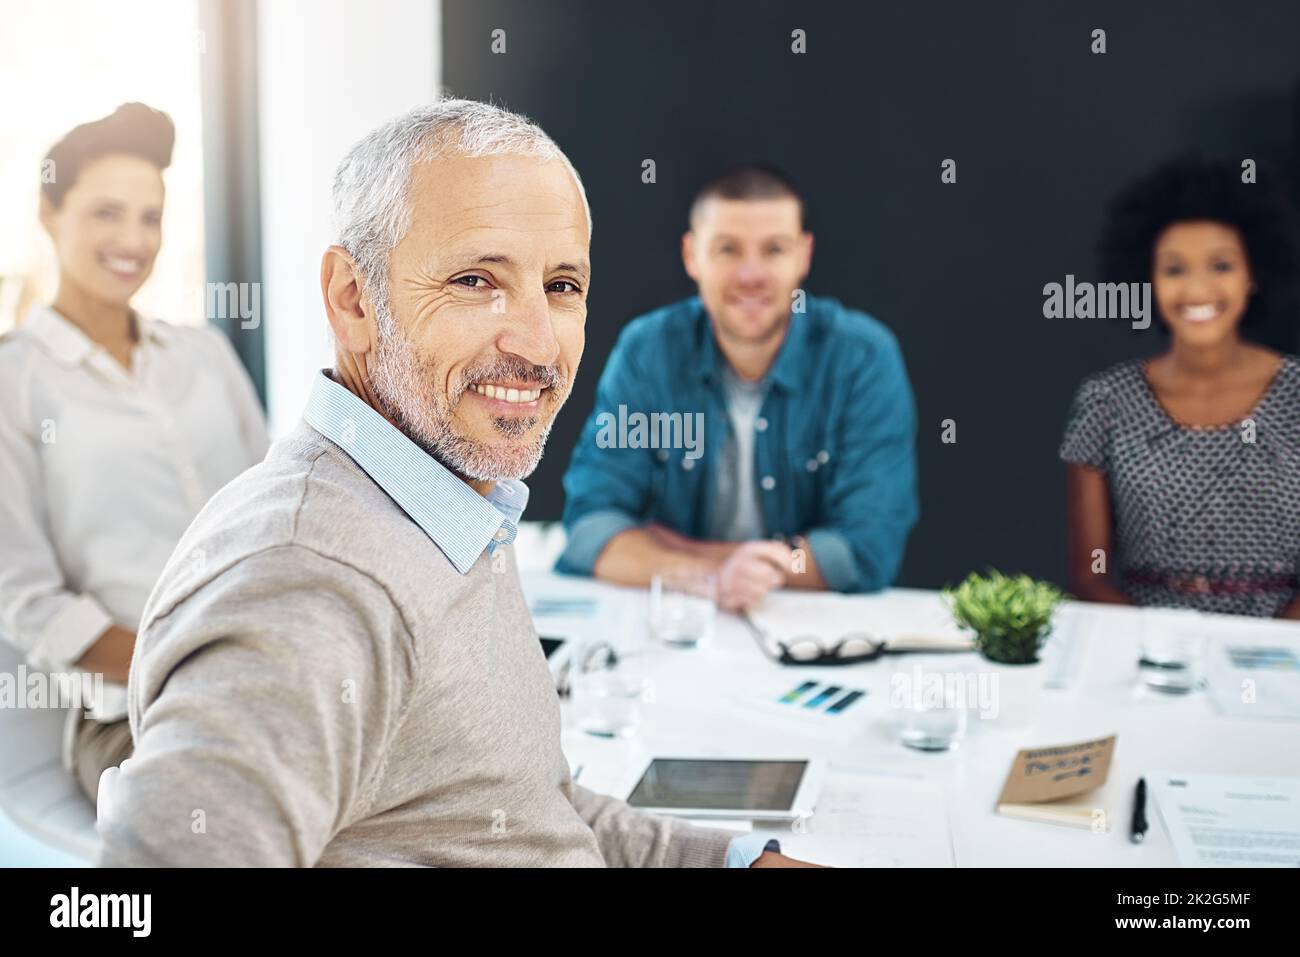 Retrato de un hombre de negocios maduro sentado en una reunión con sus colegas en el fondo. Foto de stock